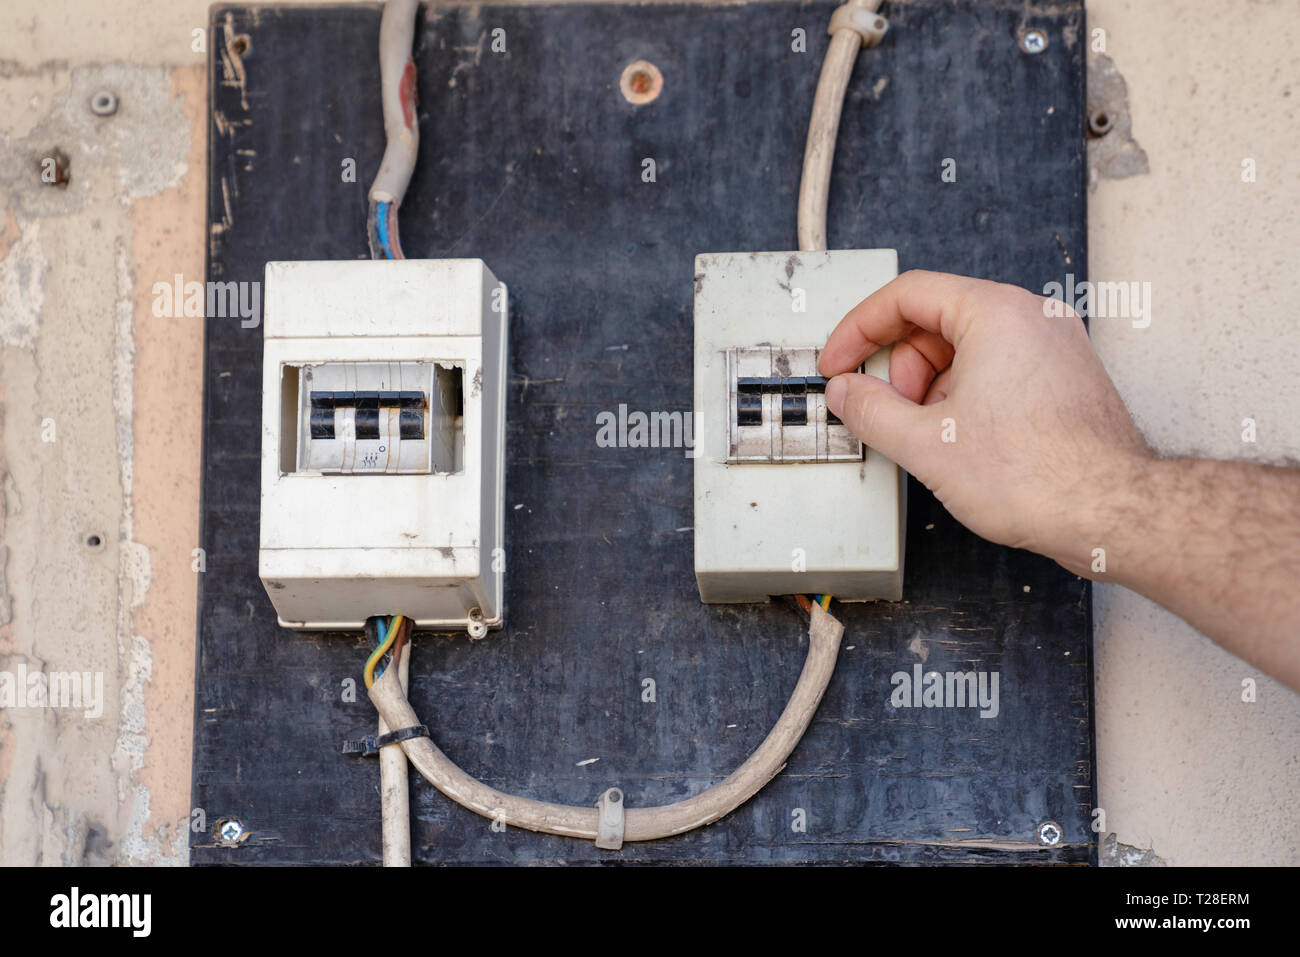 Controllare elettricista o ispezionare l'impianto elettrico interruttore di circuito di potenza sul pannello di distribuzione. Foto Stock